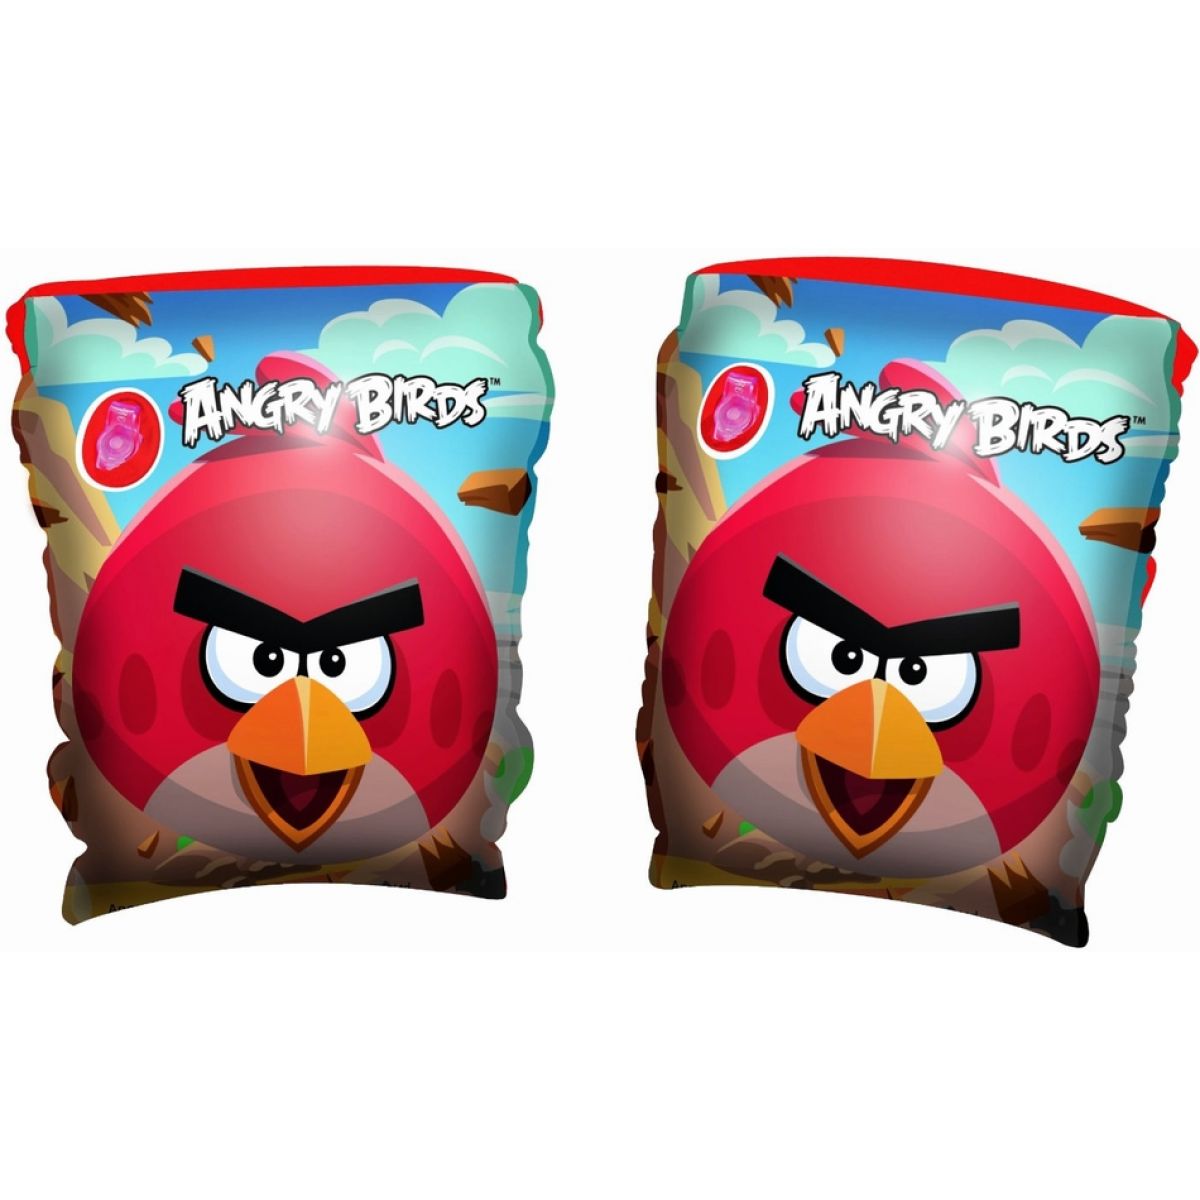 Bestway 96100EU - Nafukovací rukávky - Angry Birds, 23x15 cm